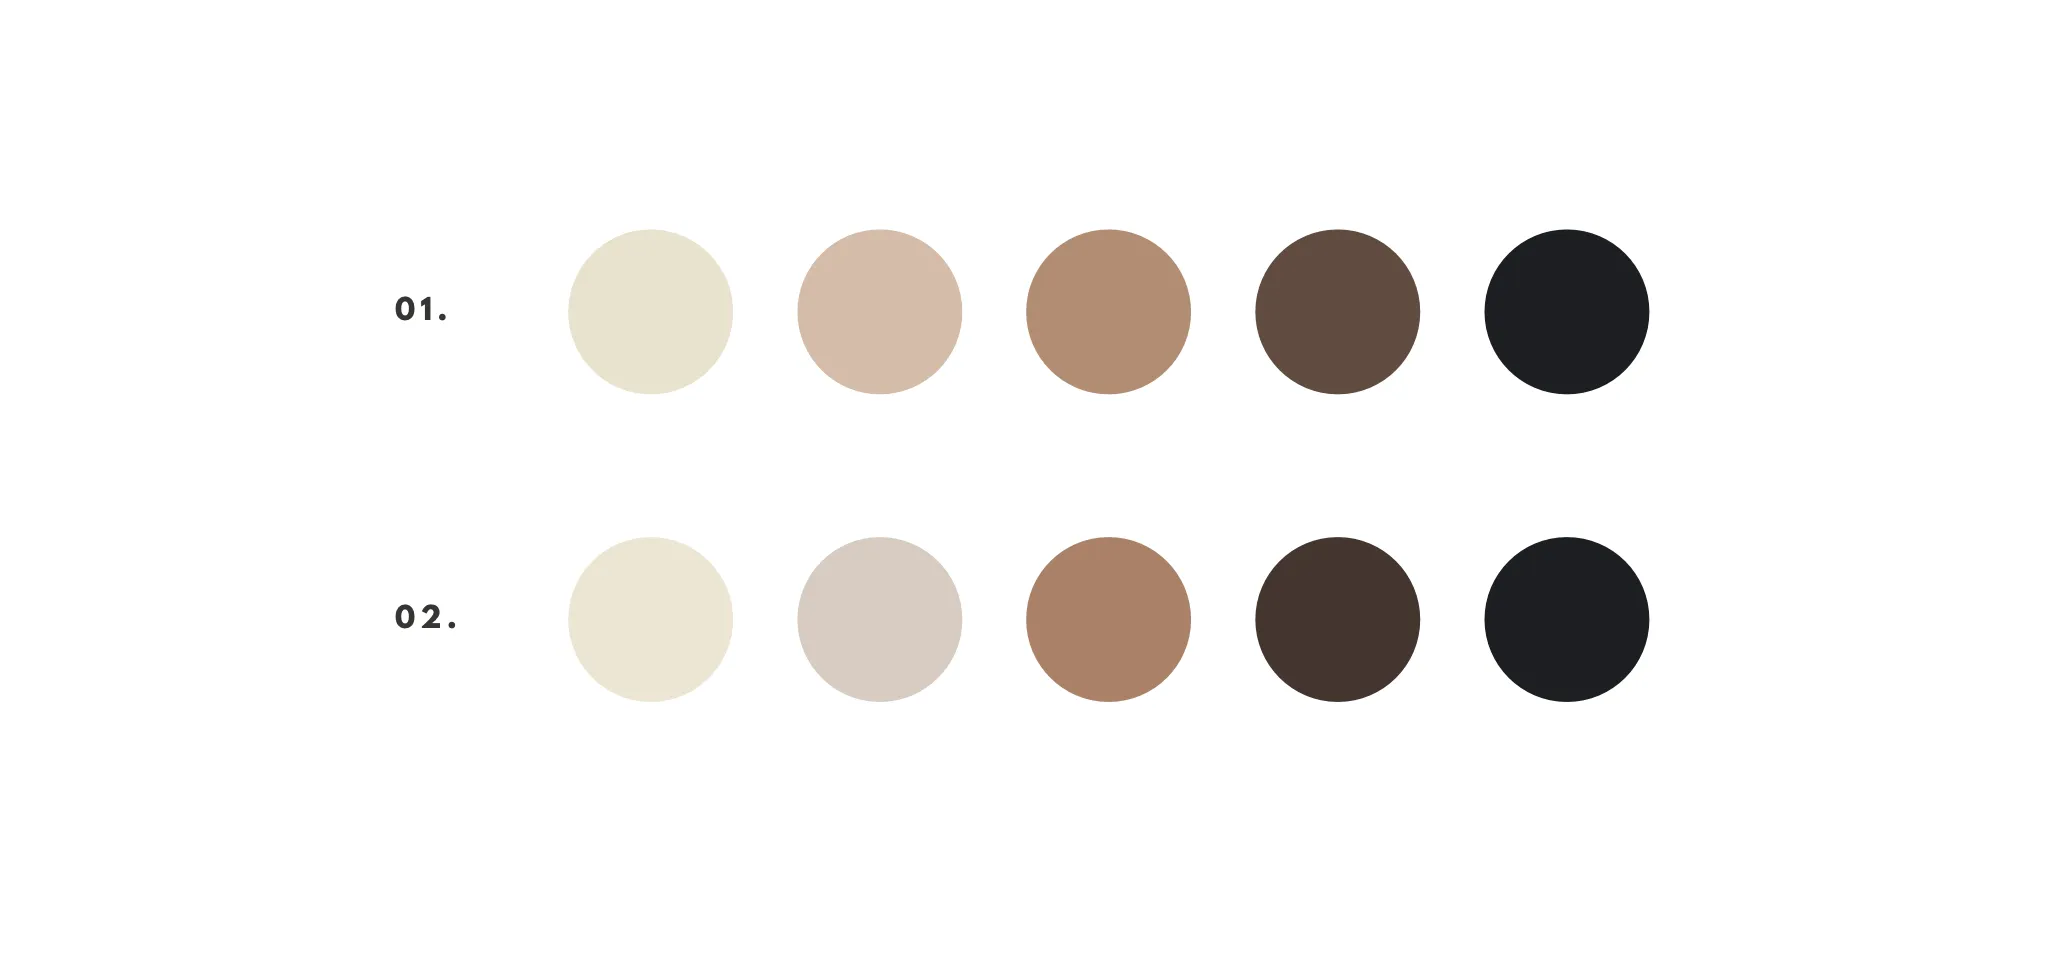 Color palette options for interior designer brand